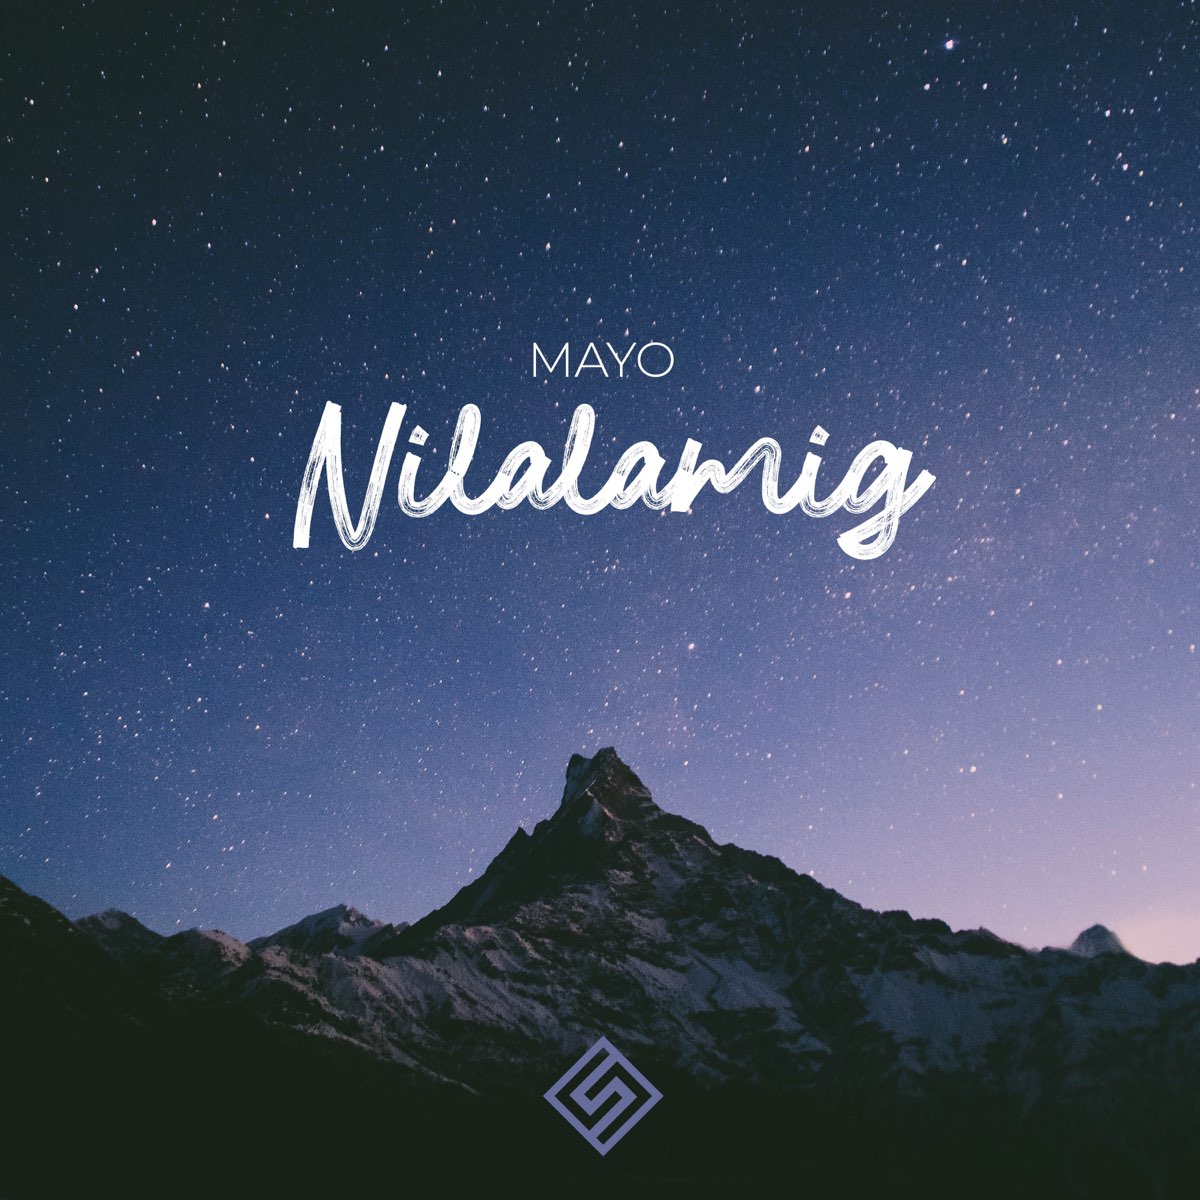 Nilalamig - Single by MAYO on Apple Music